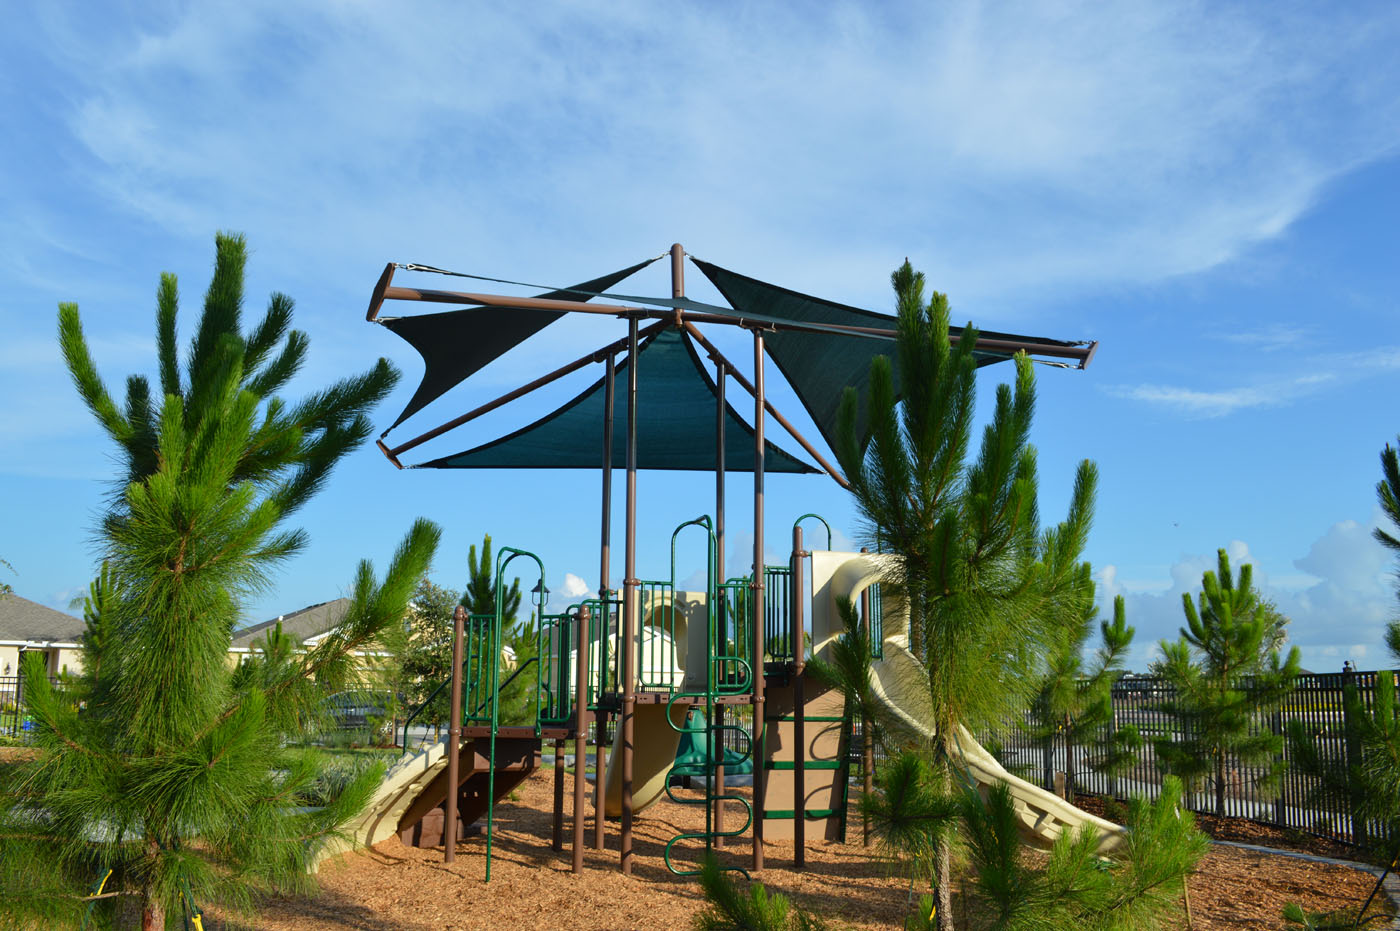 Del Tierra Playground Structure